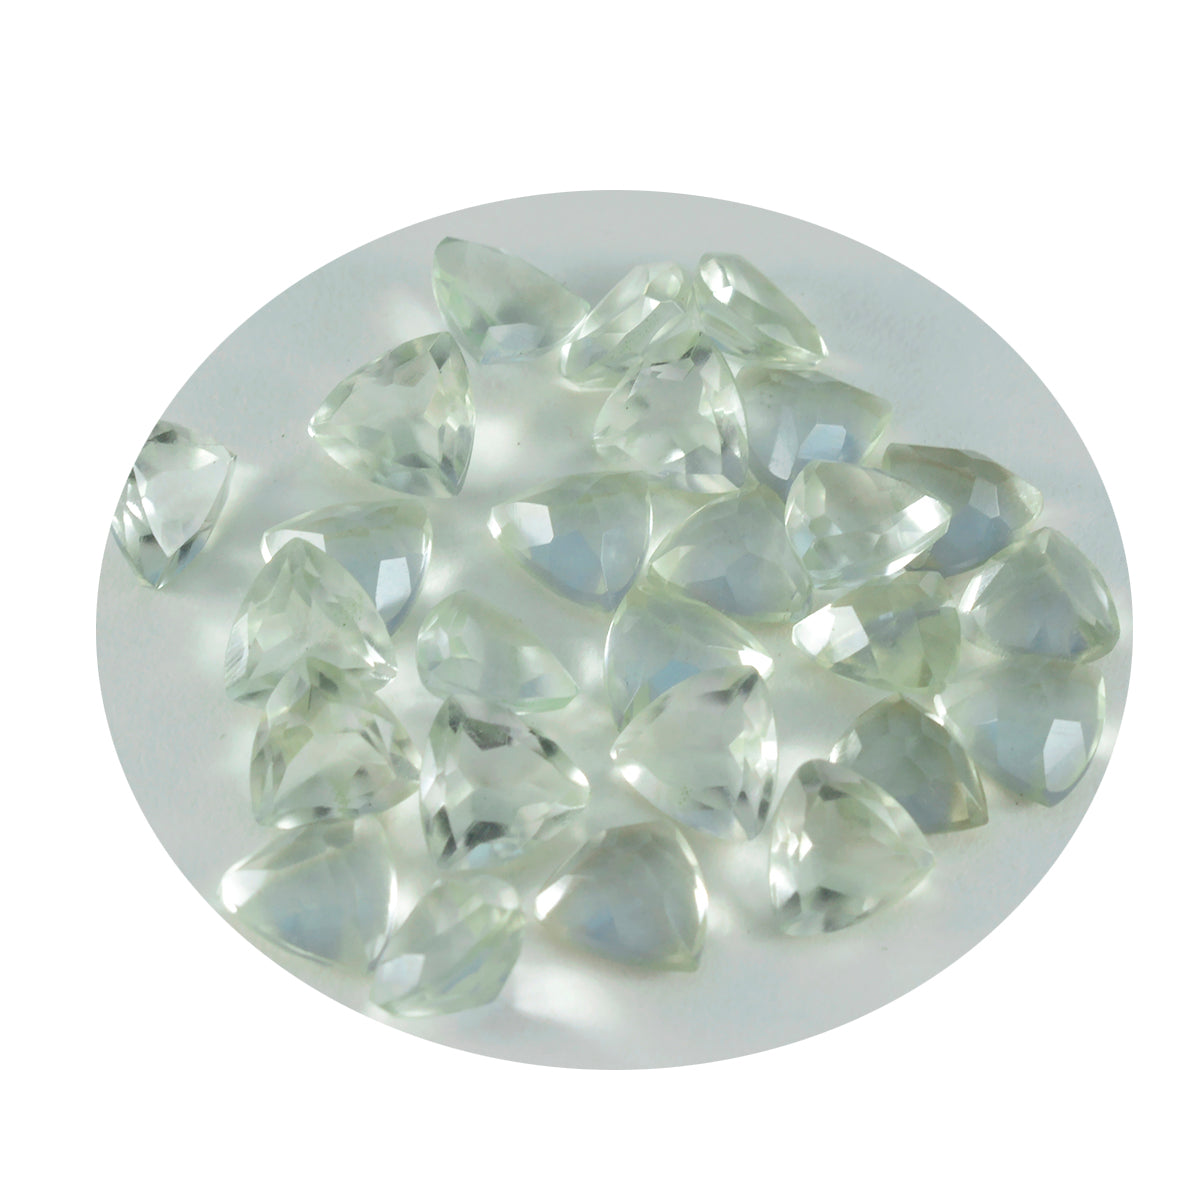 riyogems 1 шт. зеленый аметист ограненный 7x7 мм форма триллиона привлекательное качество свободный драгоценный камень